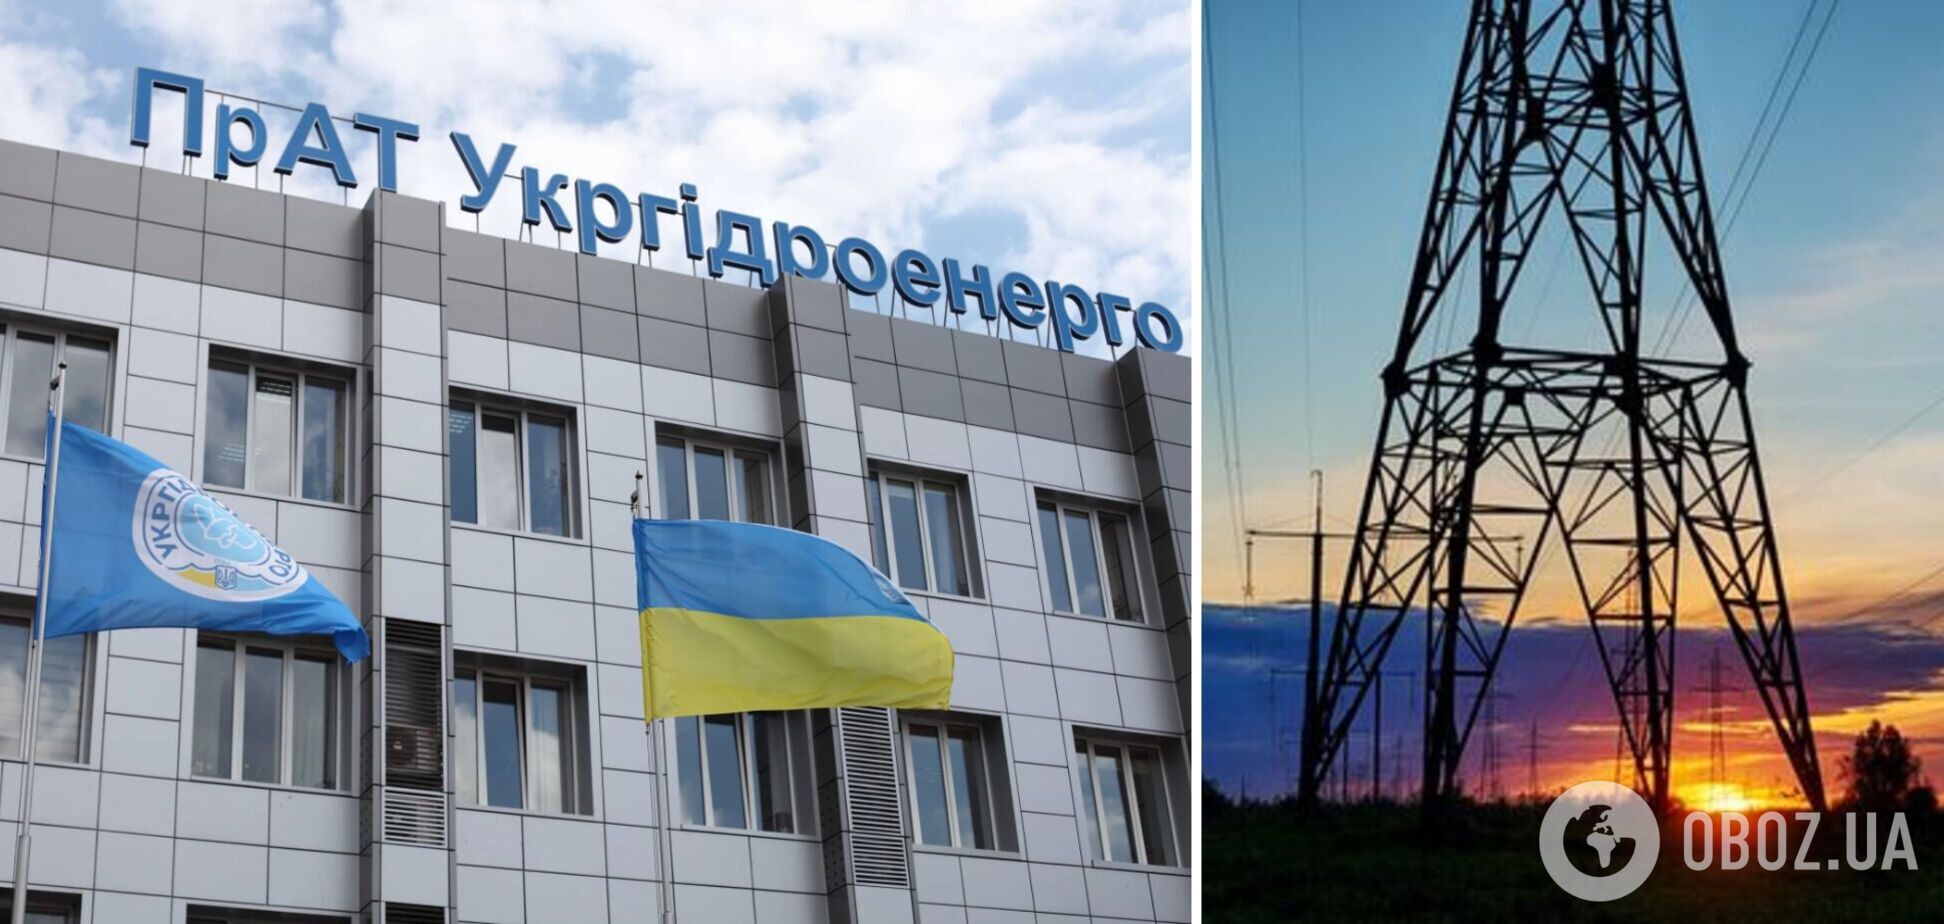 Из-за ценовых ограничений на рынке электроэнергии Украина в разы переплачивает за привлечение аварийной помощи – Укргидроэнерго